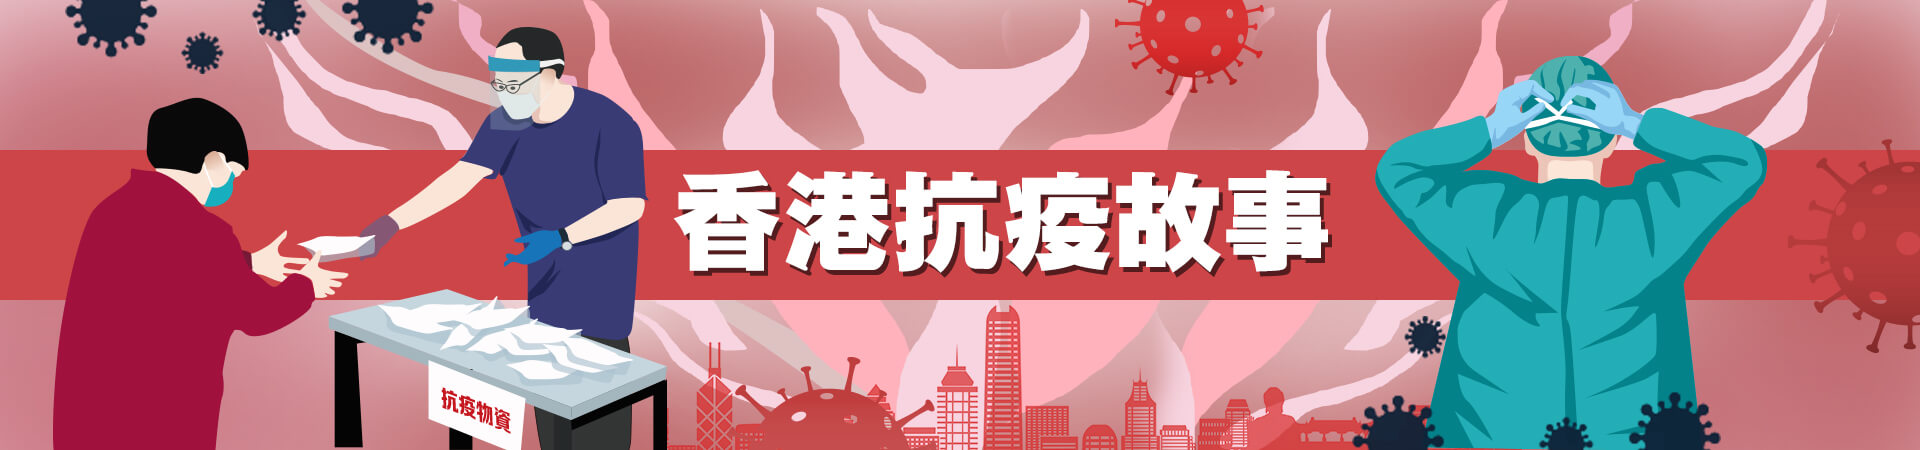 HKaepidemicStory_banner.jpg